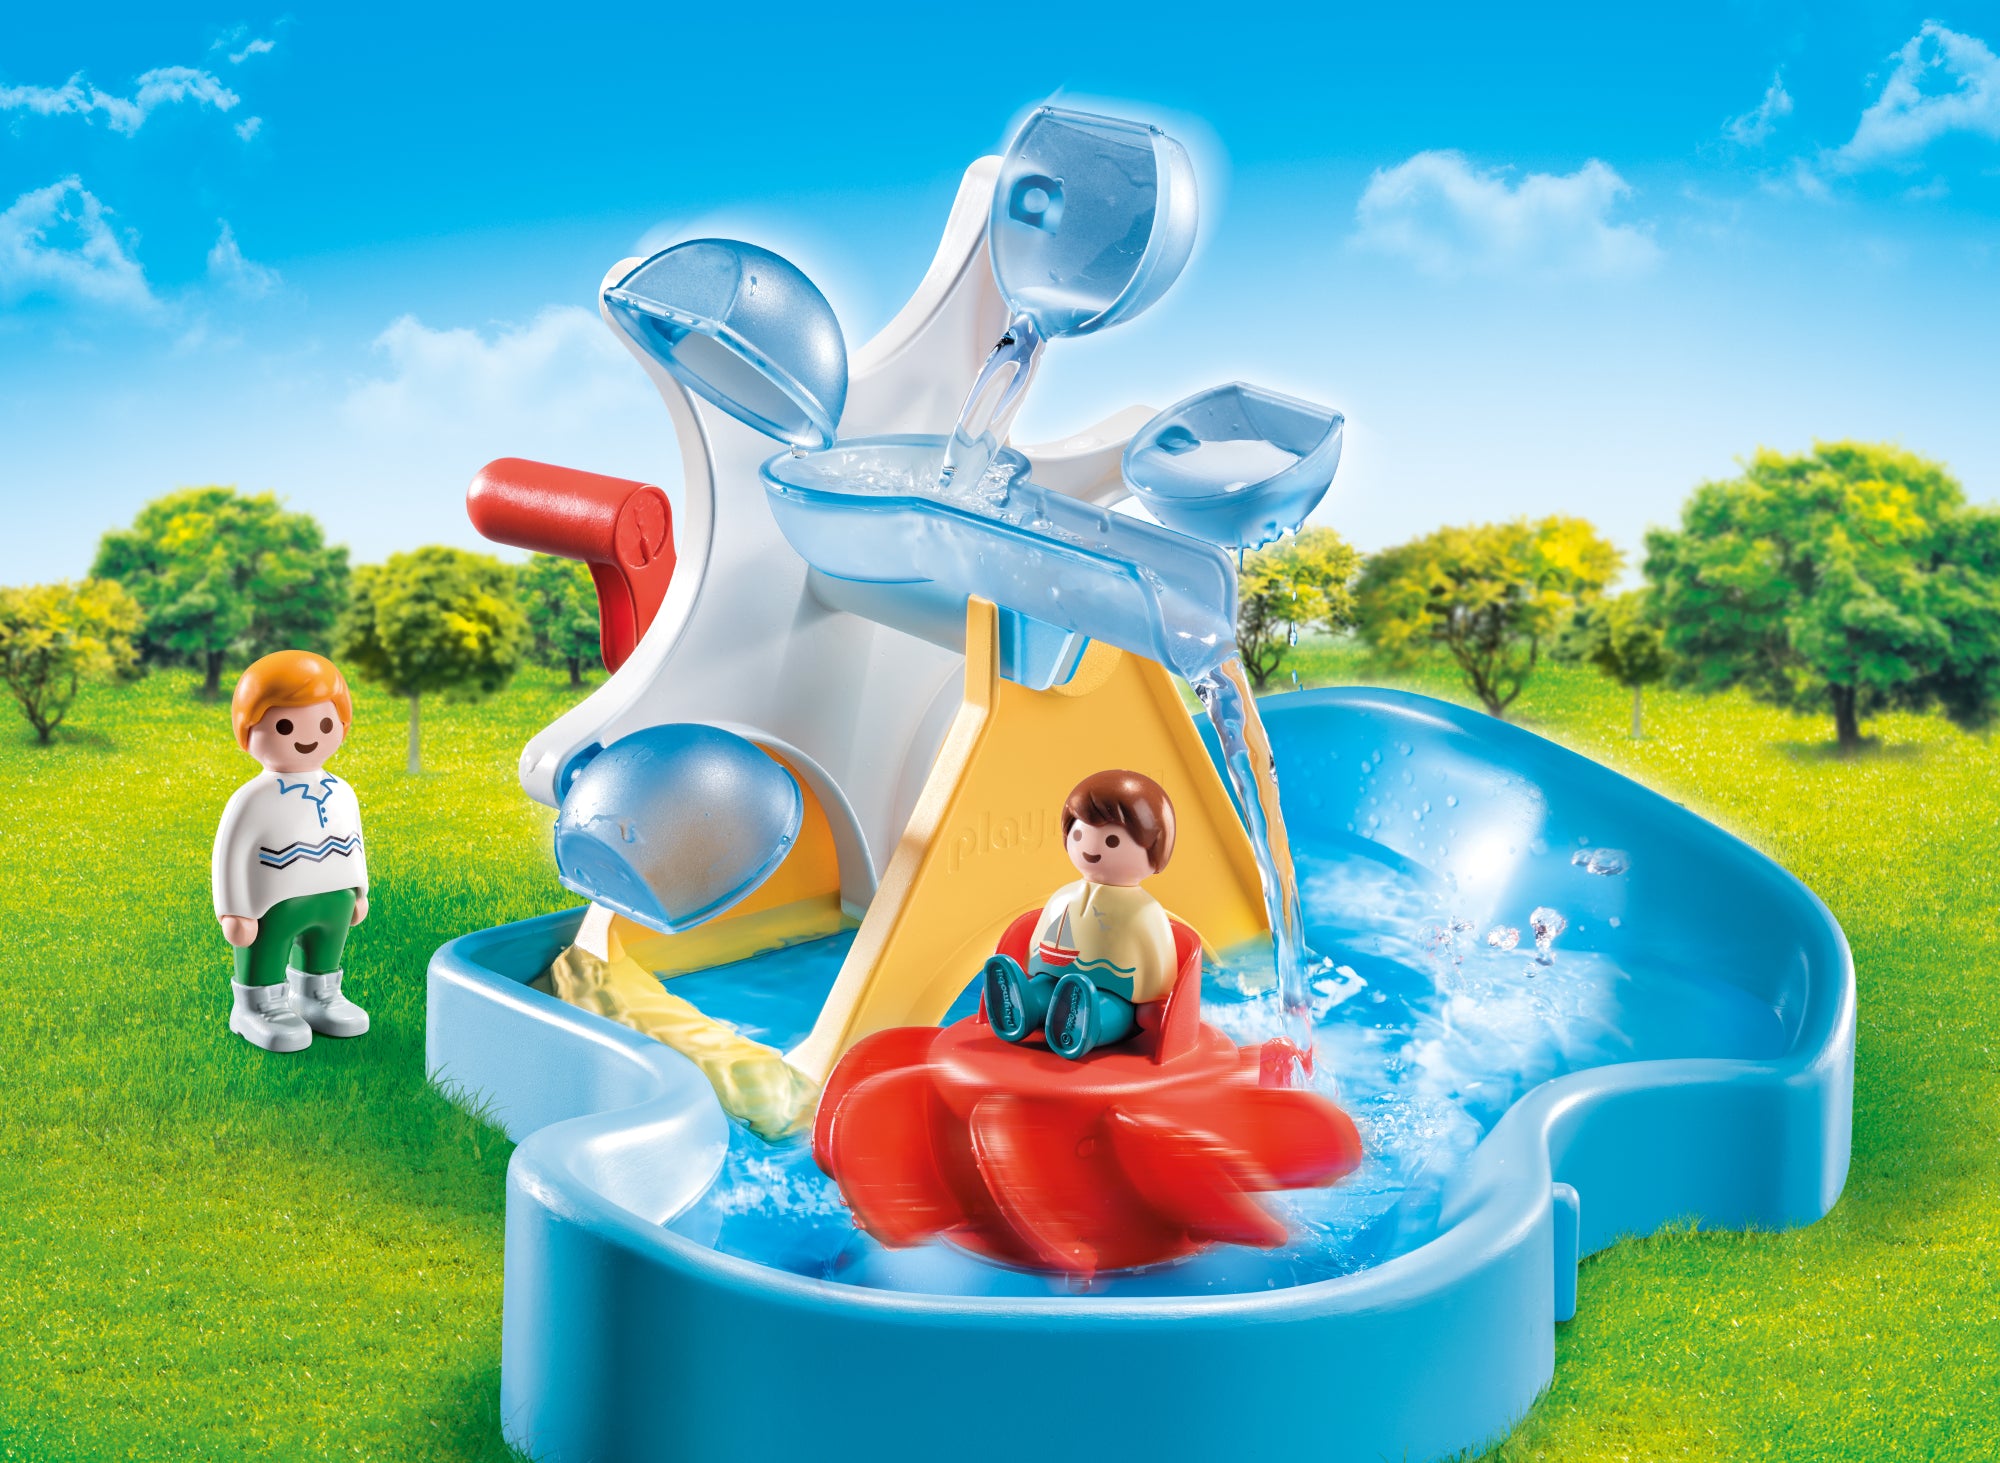 Playmobil - Carrousel aquatique